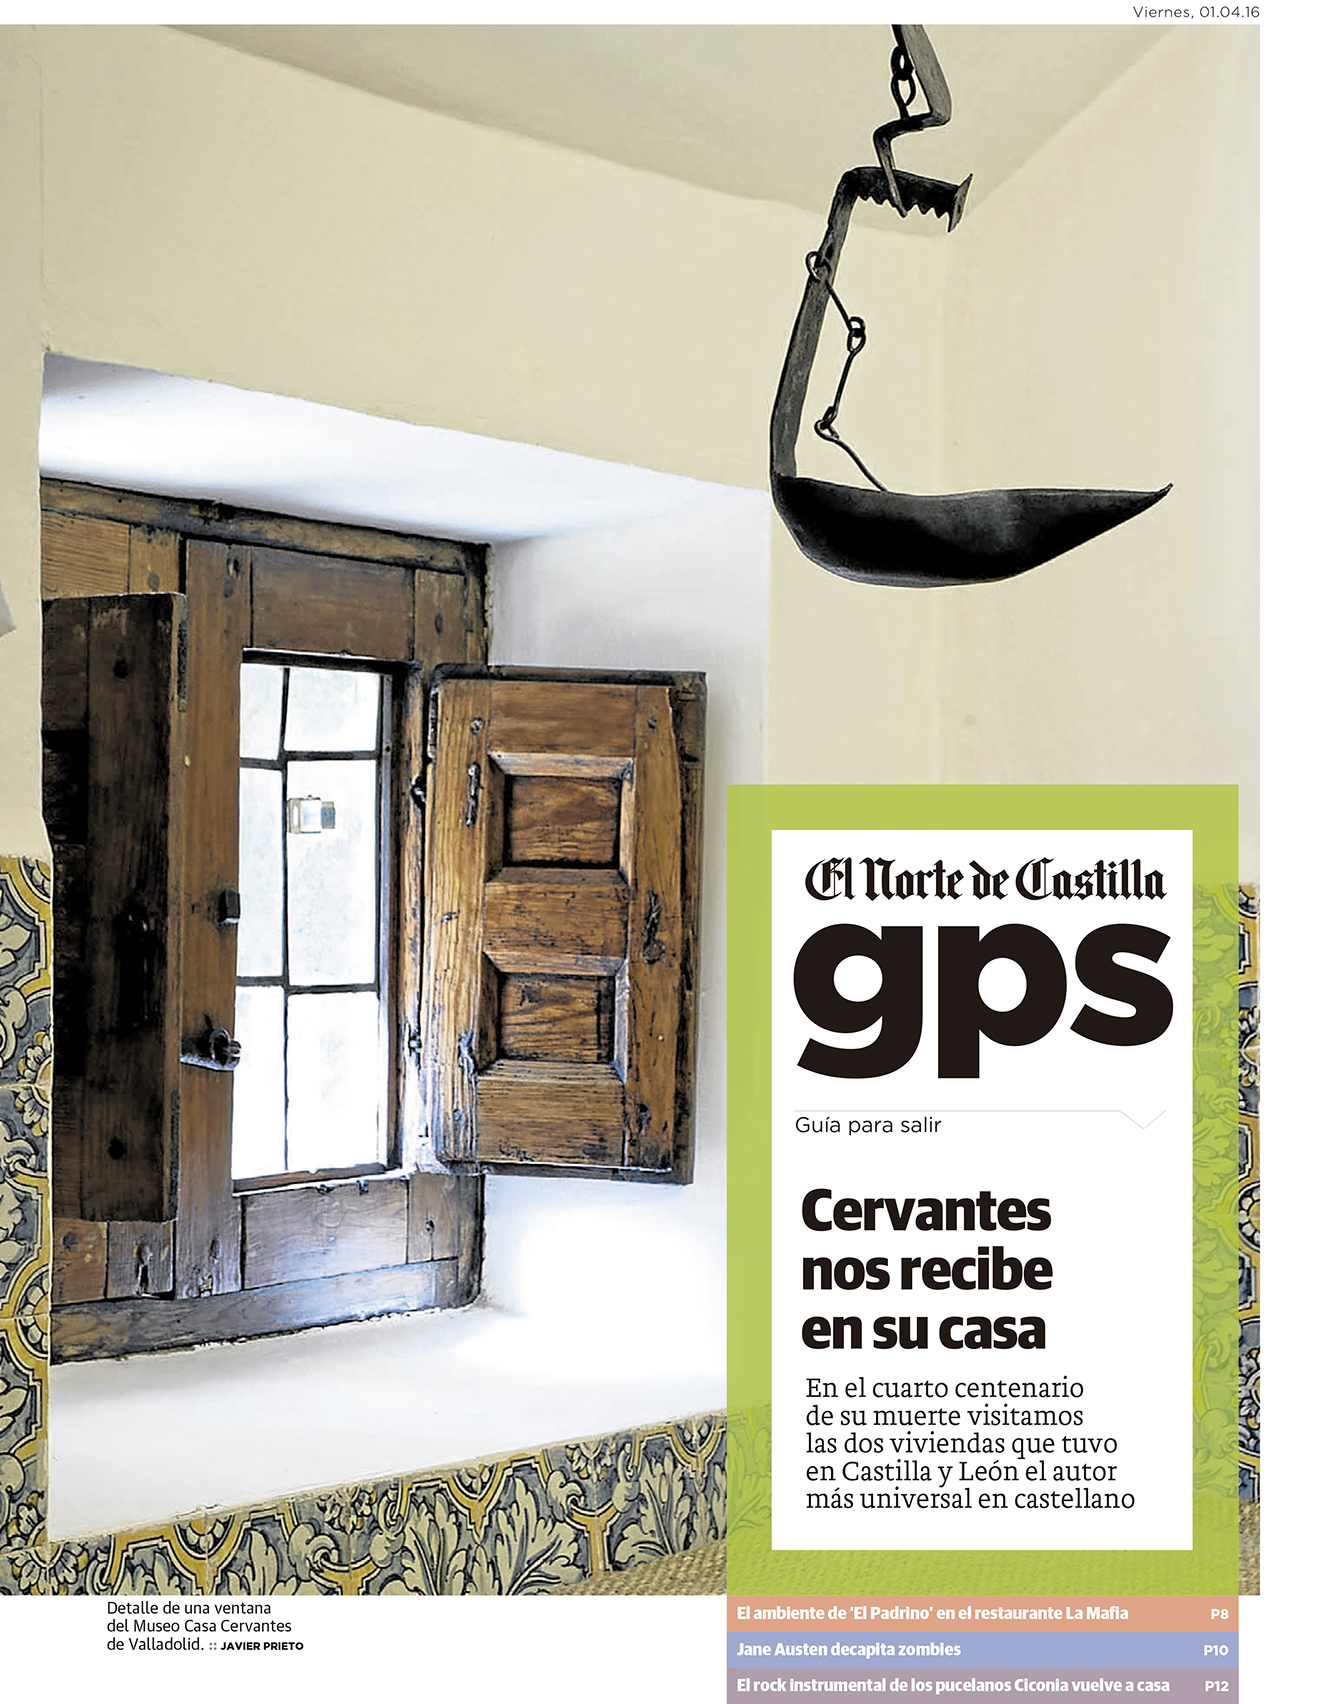 Cervantes en Castilla y León. Un reportaje de Javier Prieto Gallego en EL NORTE DE CASTILLA.